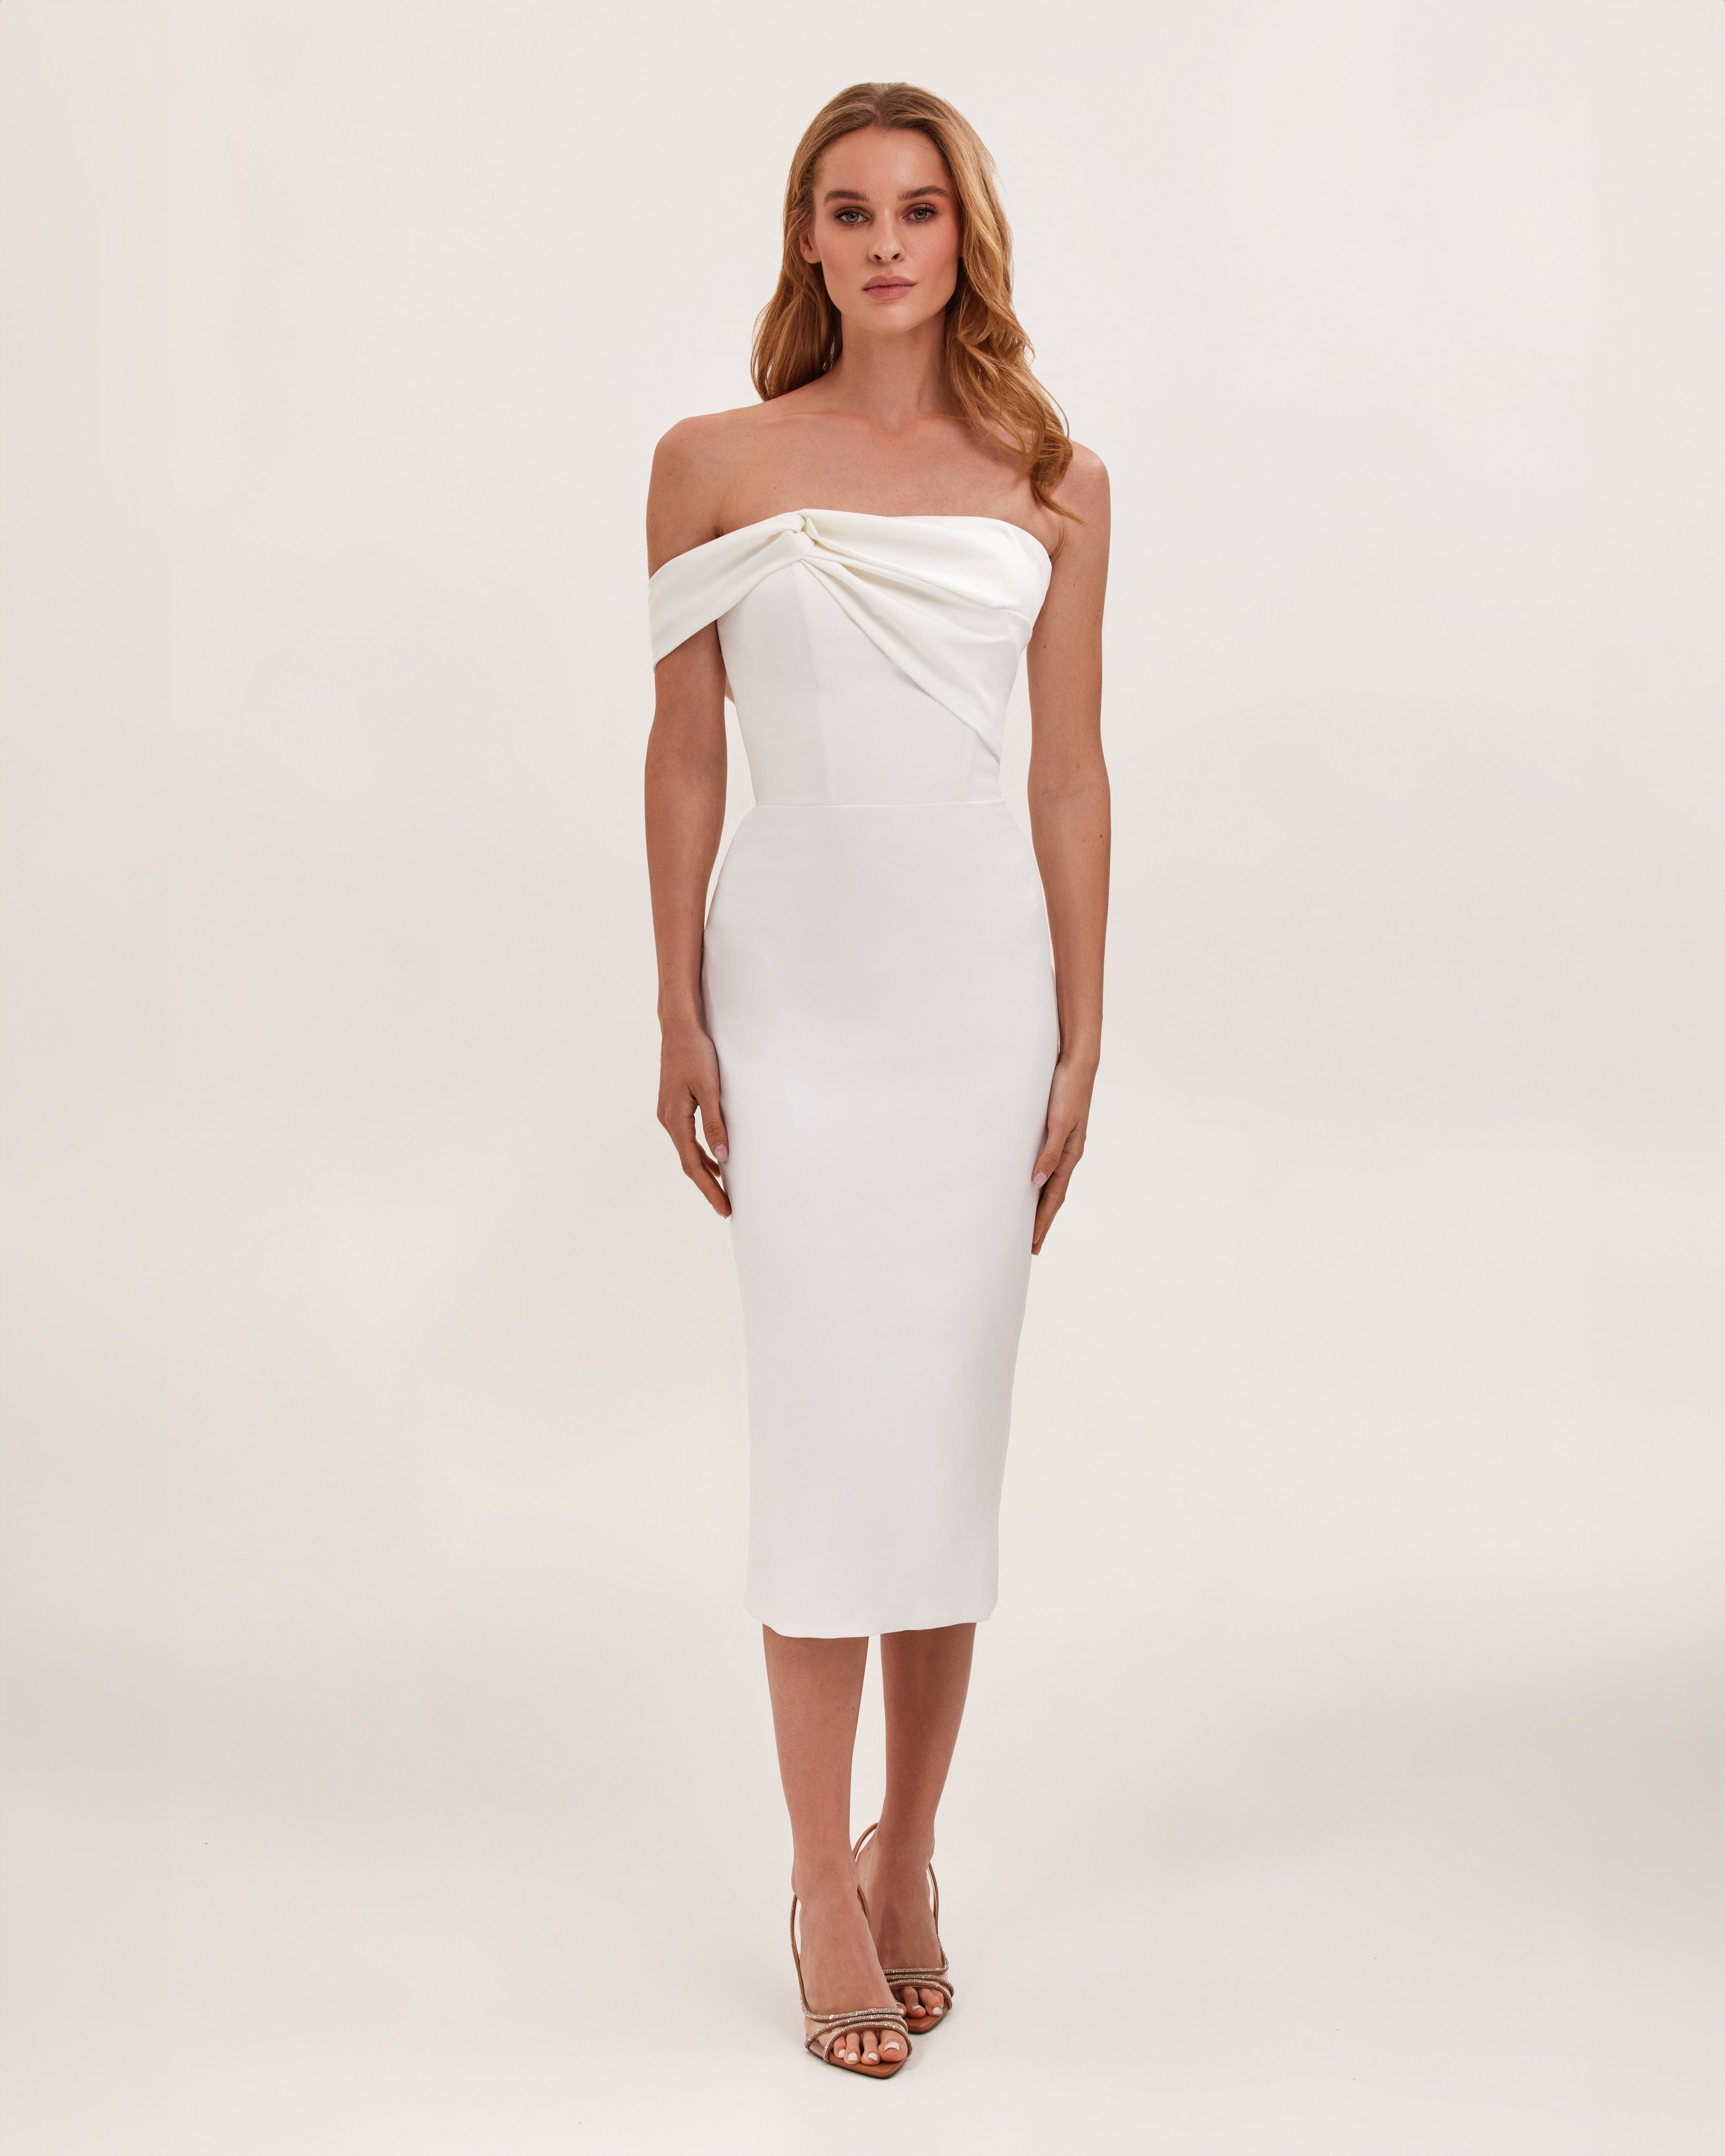 White Classy midi dress with open neckline